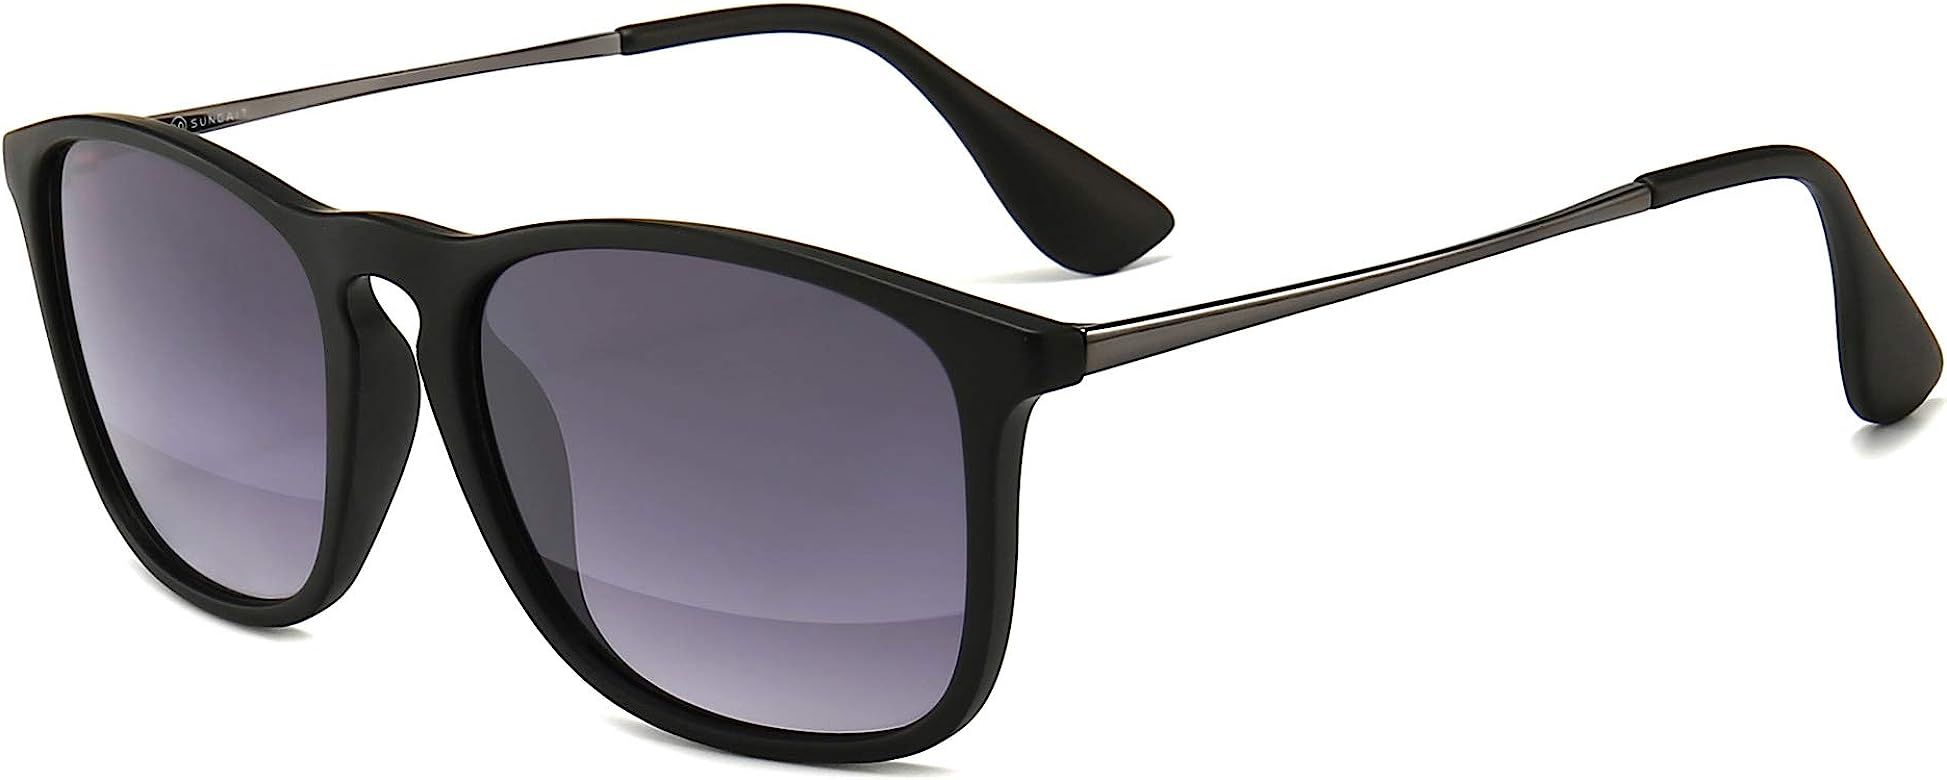 Fashion Sunglasses for Men Women Retro Style Square Sun Glasses UV400 | Amazon (US)